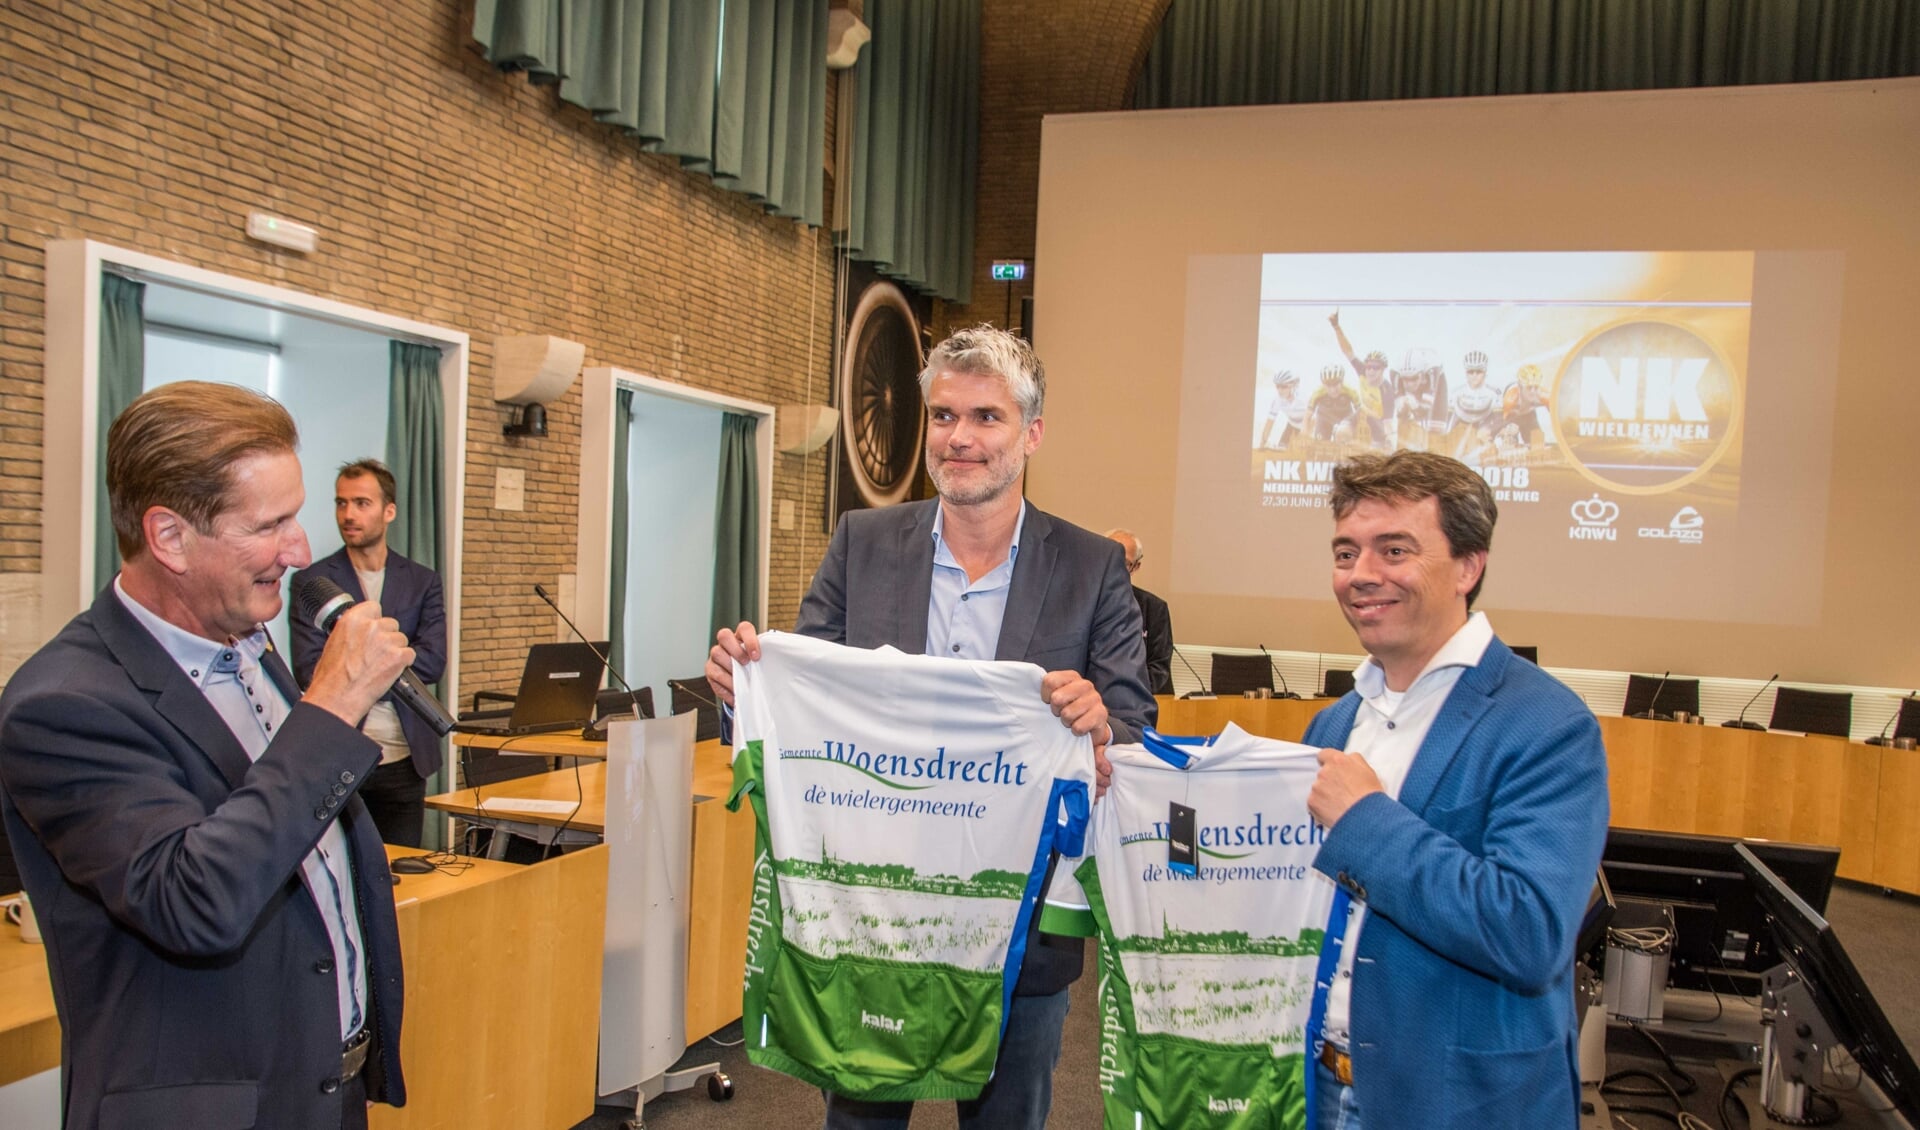 KNWU-directeur Vincent Luijendijk en Dimitri Bonthuis van Golazo ontvingen van wethouder de Waal een wielershirt.